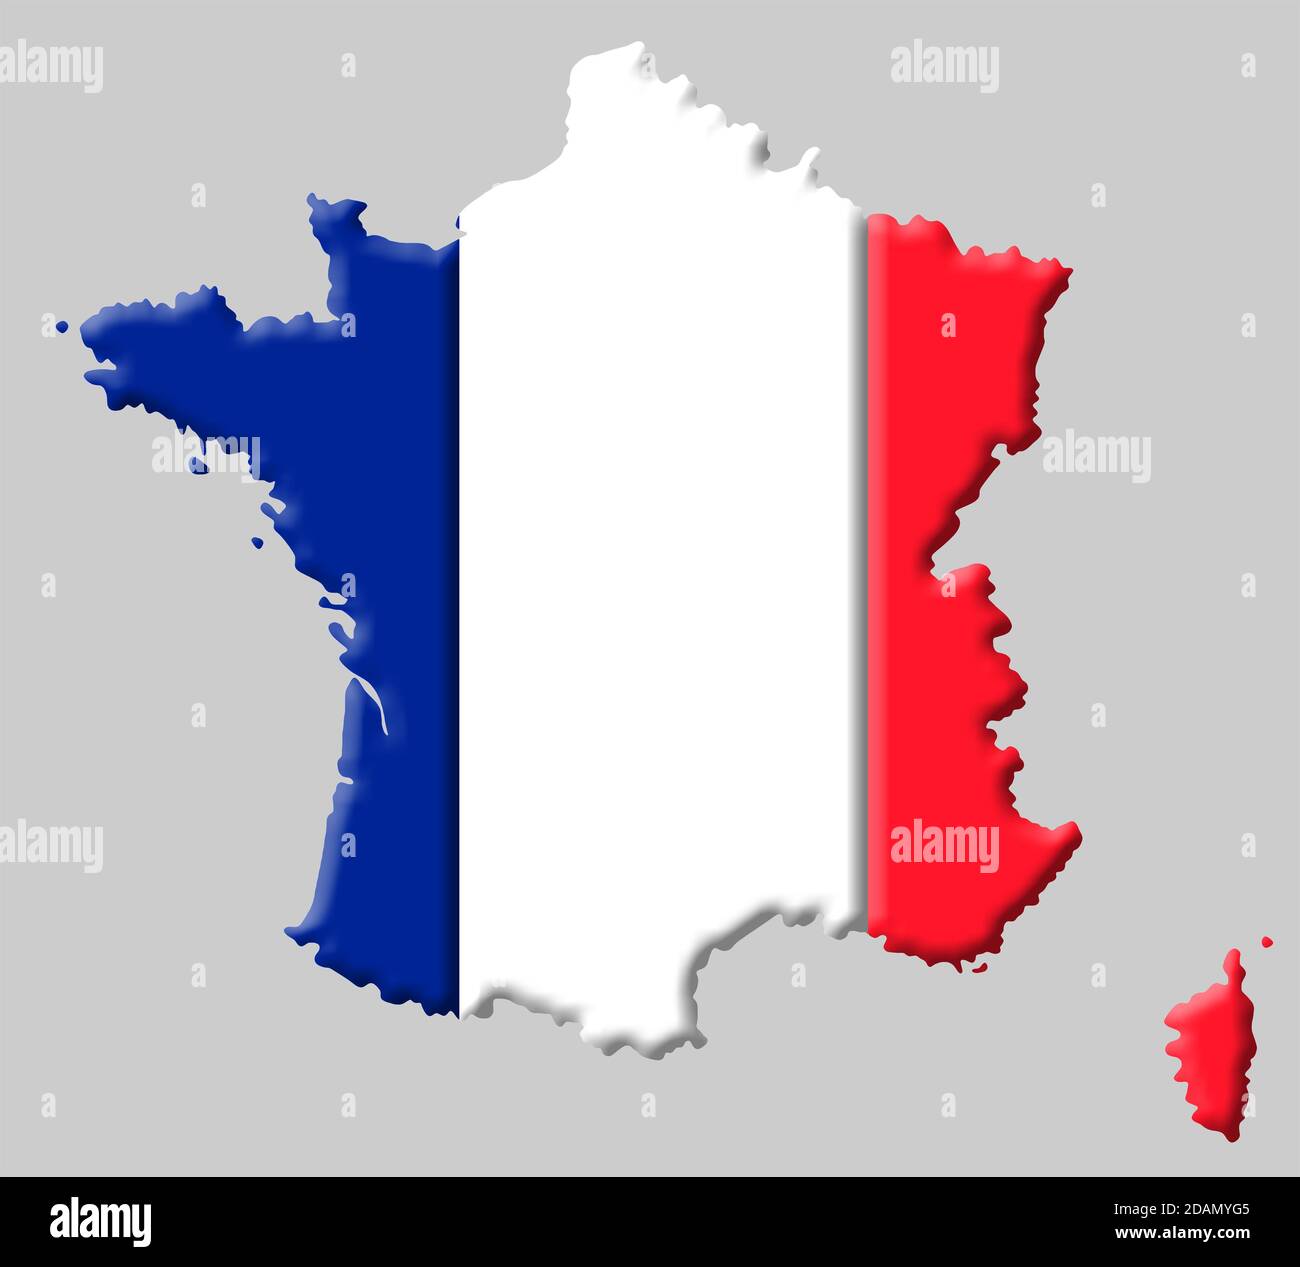 Mappa 3D della Francia con i colori della nazionale francese allarme Foto Stock